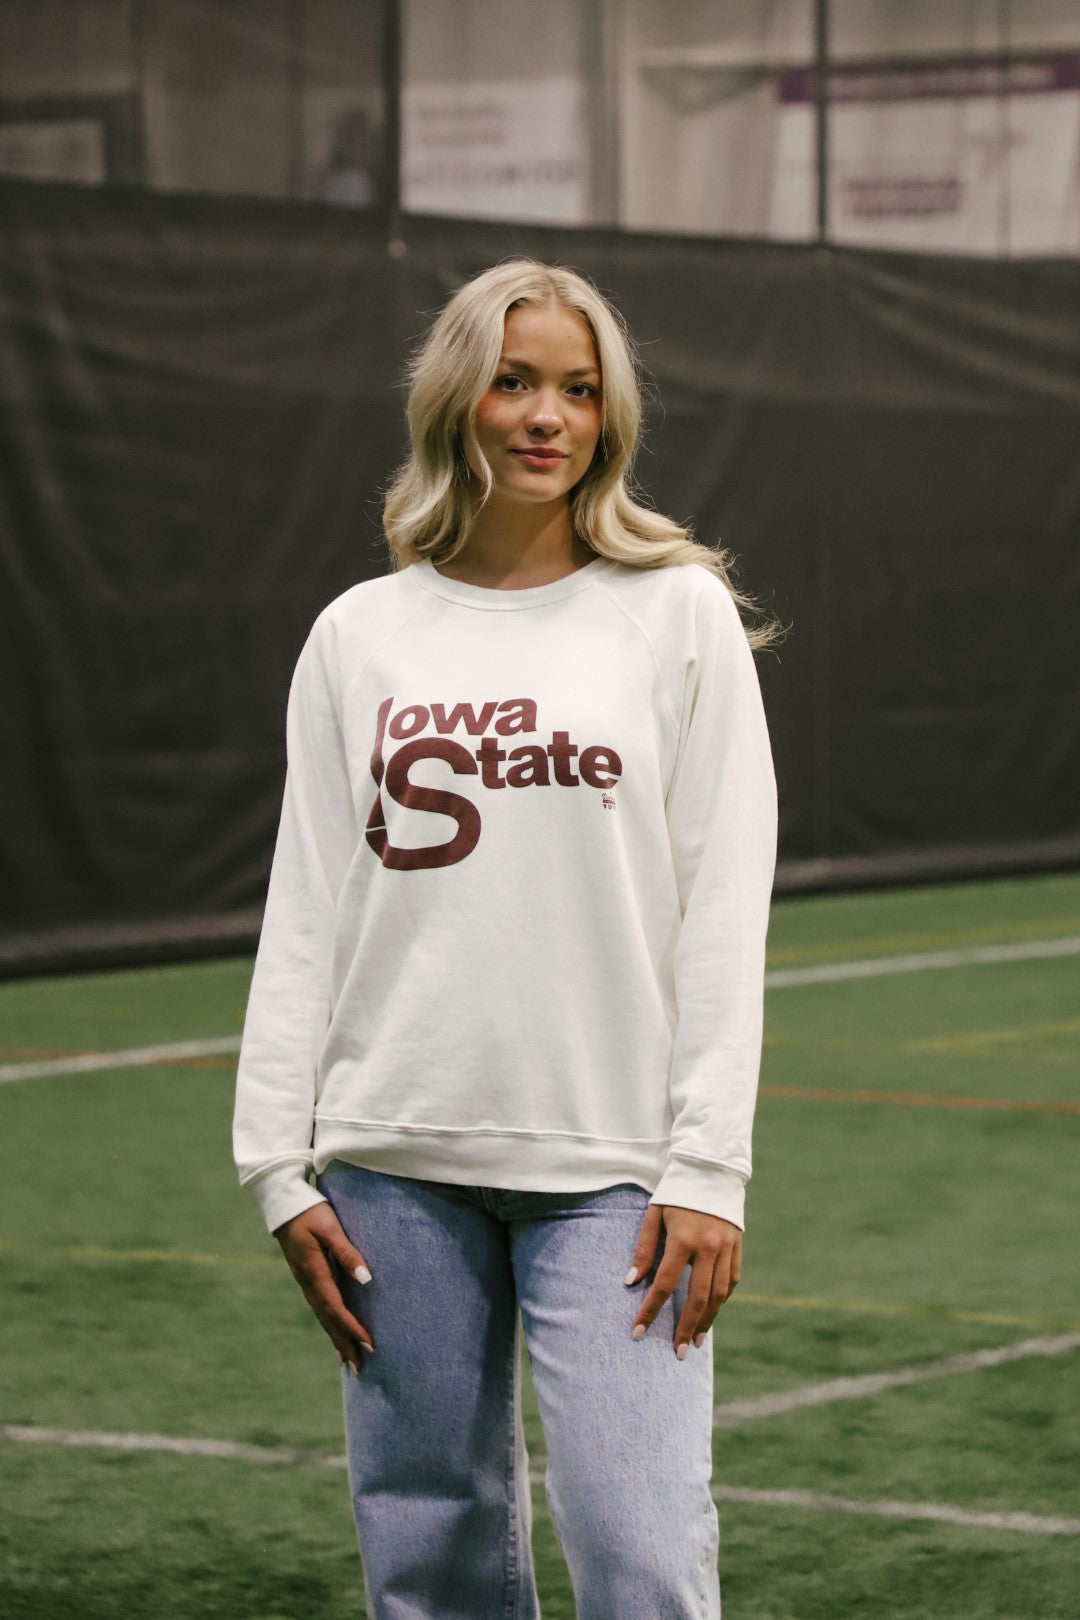 Retro Sport x Blond Genius - Iowa State Sweatshirt in Antique White